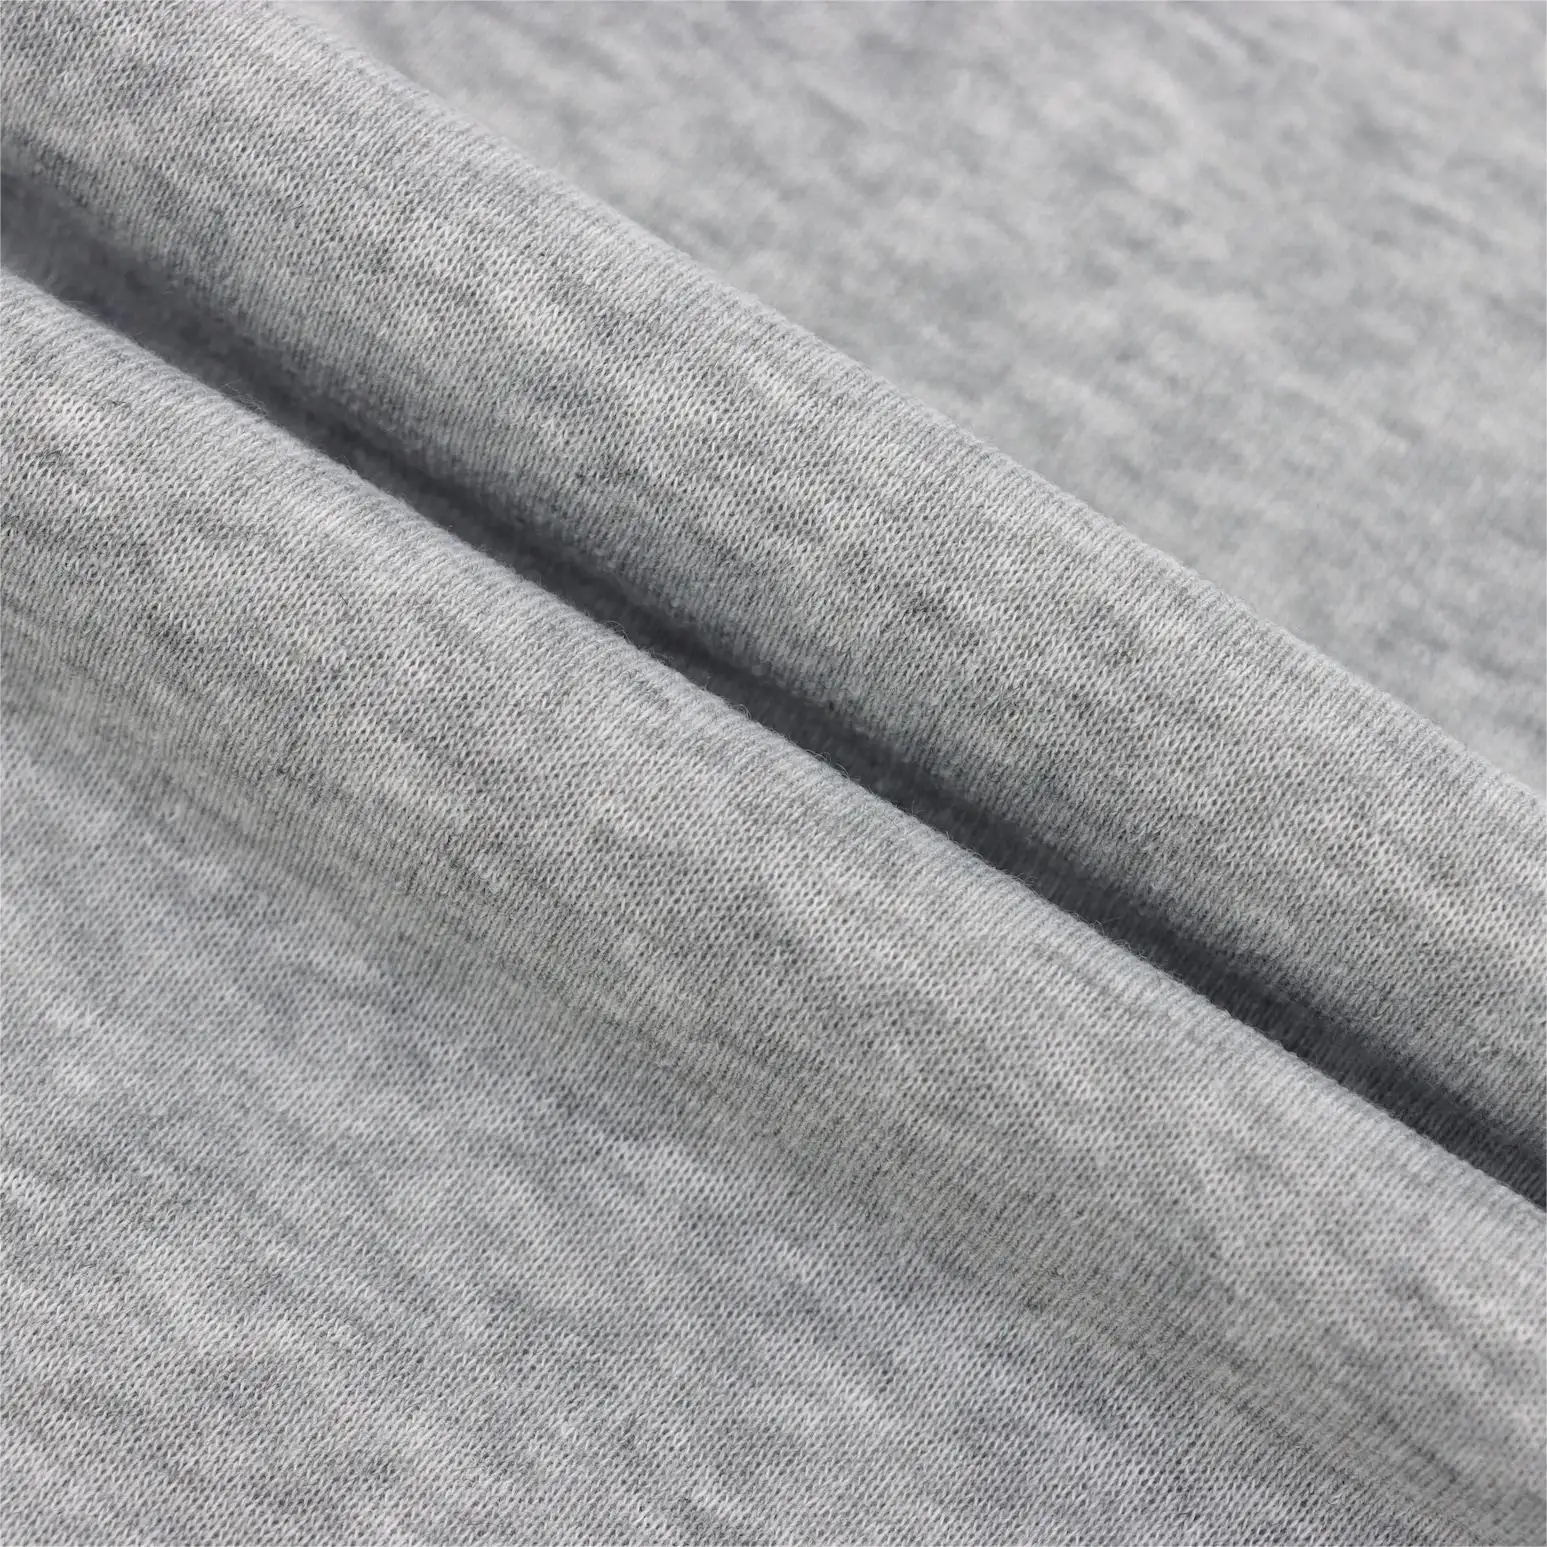 Super weicher Vliespullover/Kapuzenpullover 100 % Polyester gestrickt Einzeltrikot Stoff für Frühling und Sommer